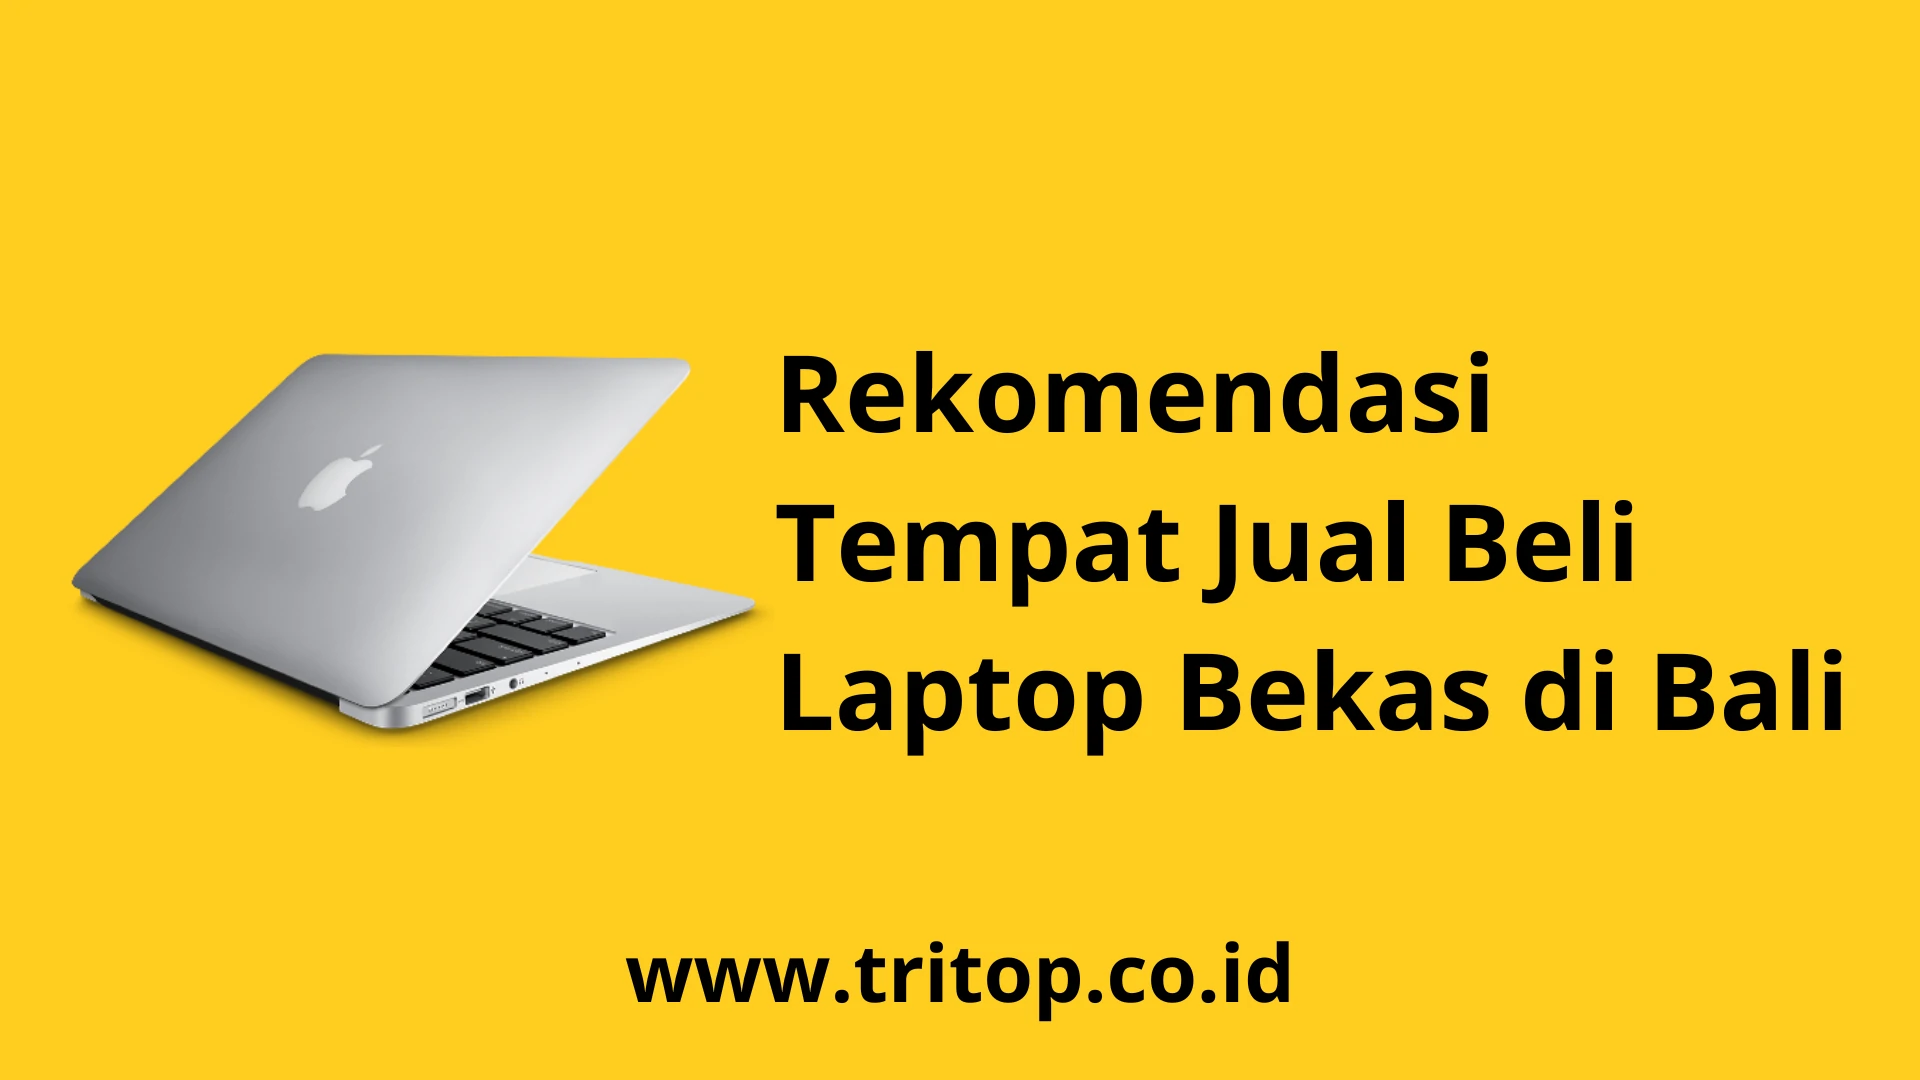 Laptop Bekas di Bali www.tritop.co.id